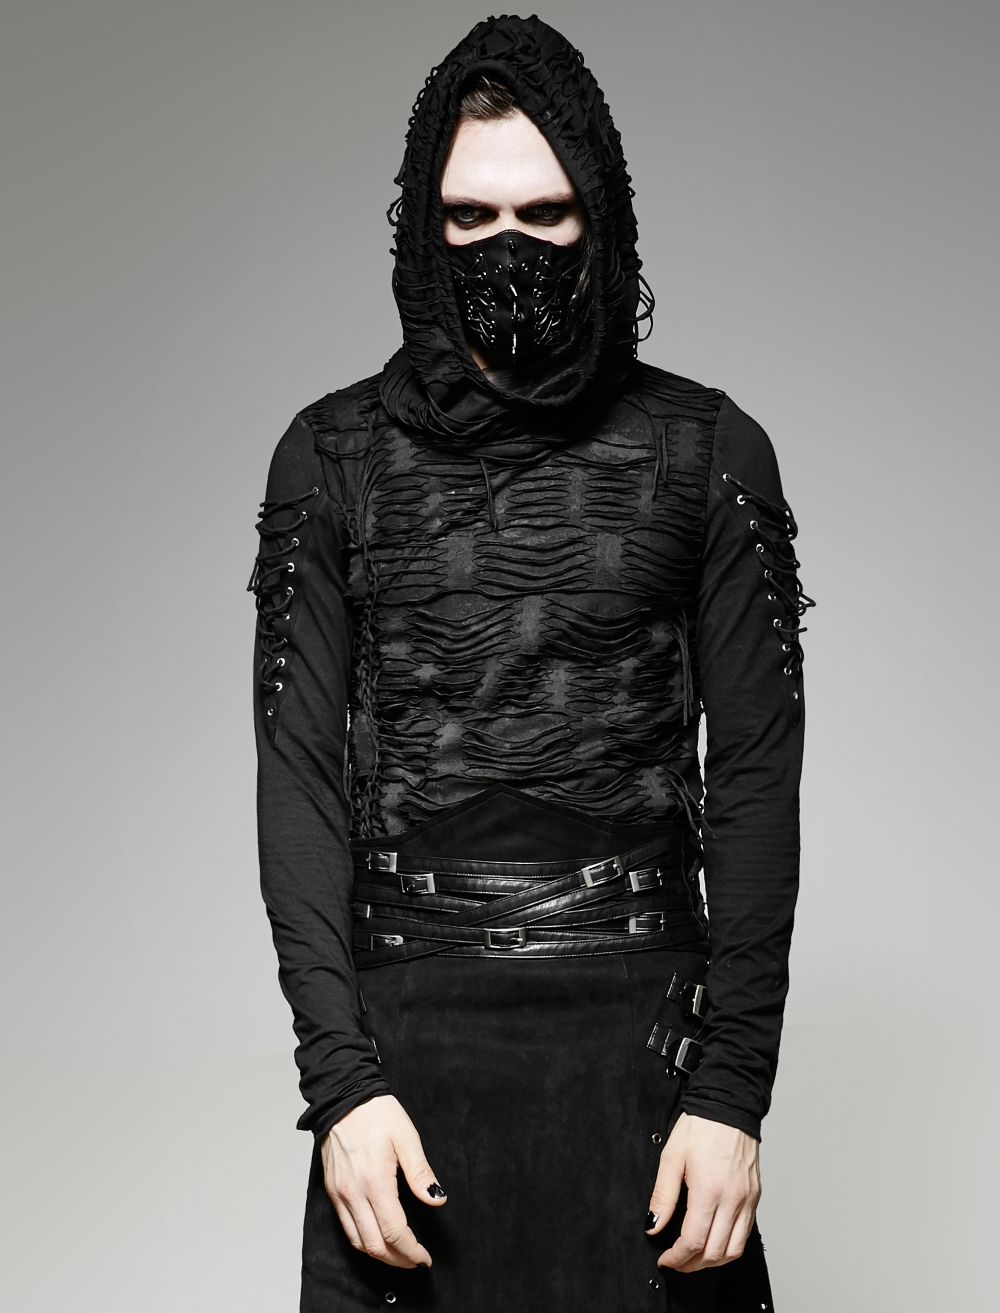 Fashion Hommes Veste à Capuche Long Cardigan Noir Ninja Goth Gothique Punk Sweat À Capuche Manteau